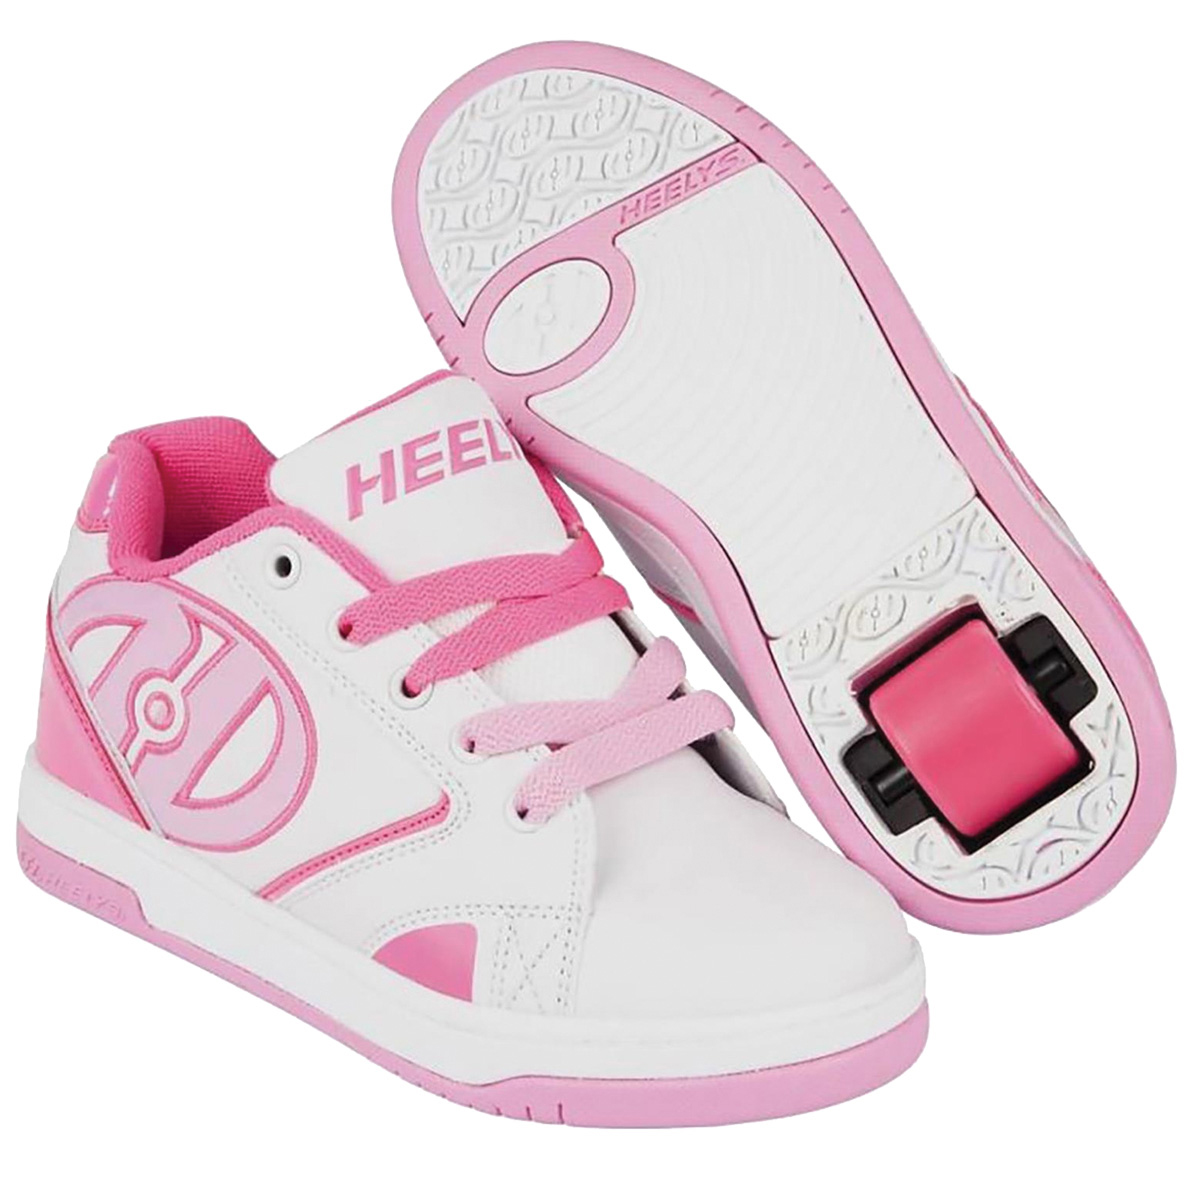 Кроссовки роликовые для девочки Heelys, цвет: белый, розовый. 770605. Размер 38 (37)